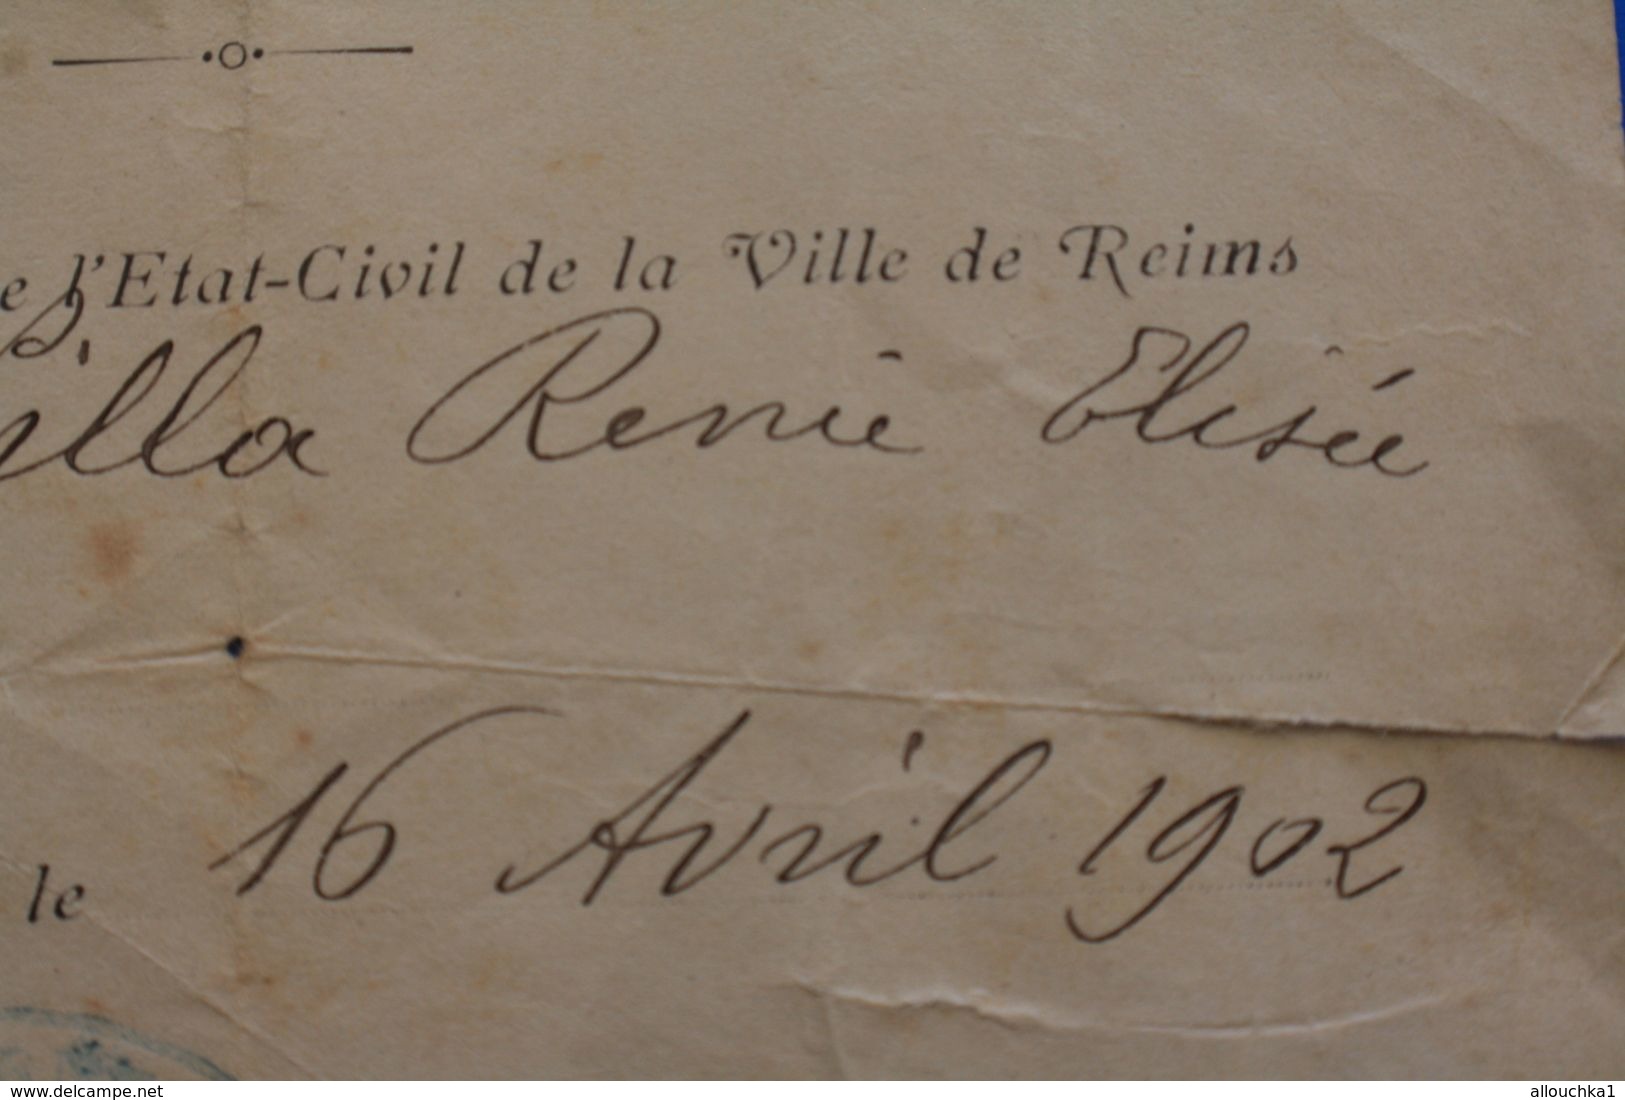 16 AVRIL 1902 MAIRIE DE REIMS REGISTRE DE LA VILLE ACTE DE NAISSANCE EST NEE VILLA RENÉE ELYSÉE  FAIRE PART MANUSCRIT - Naissance & Baptême